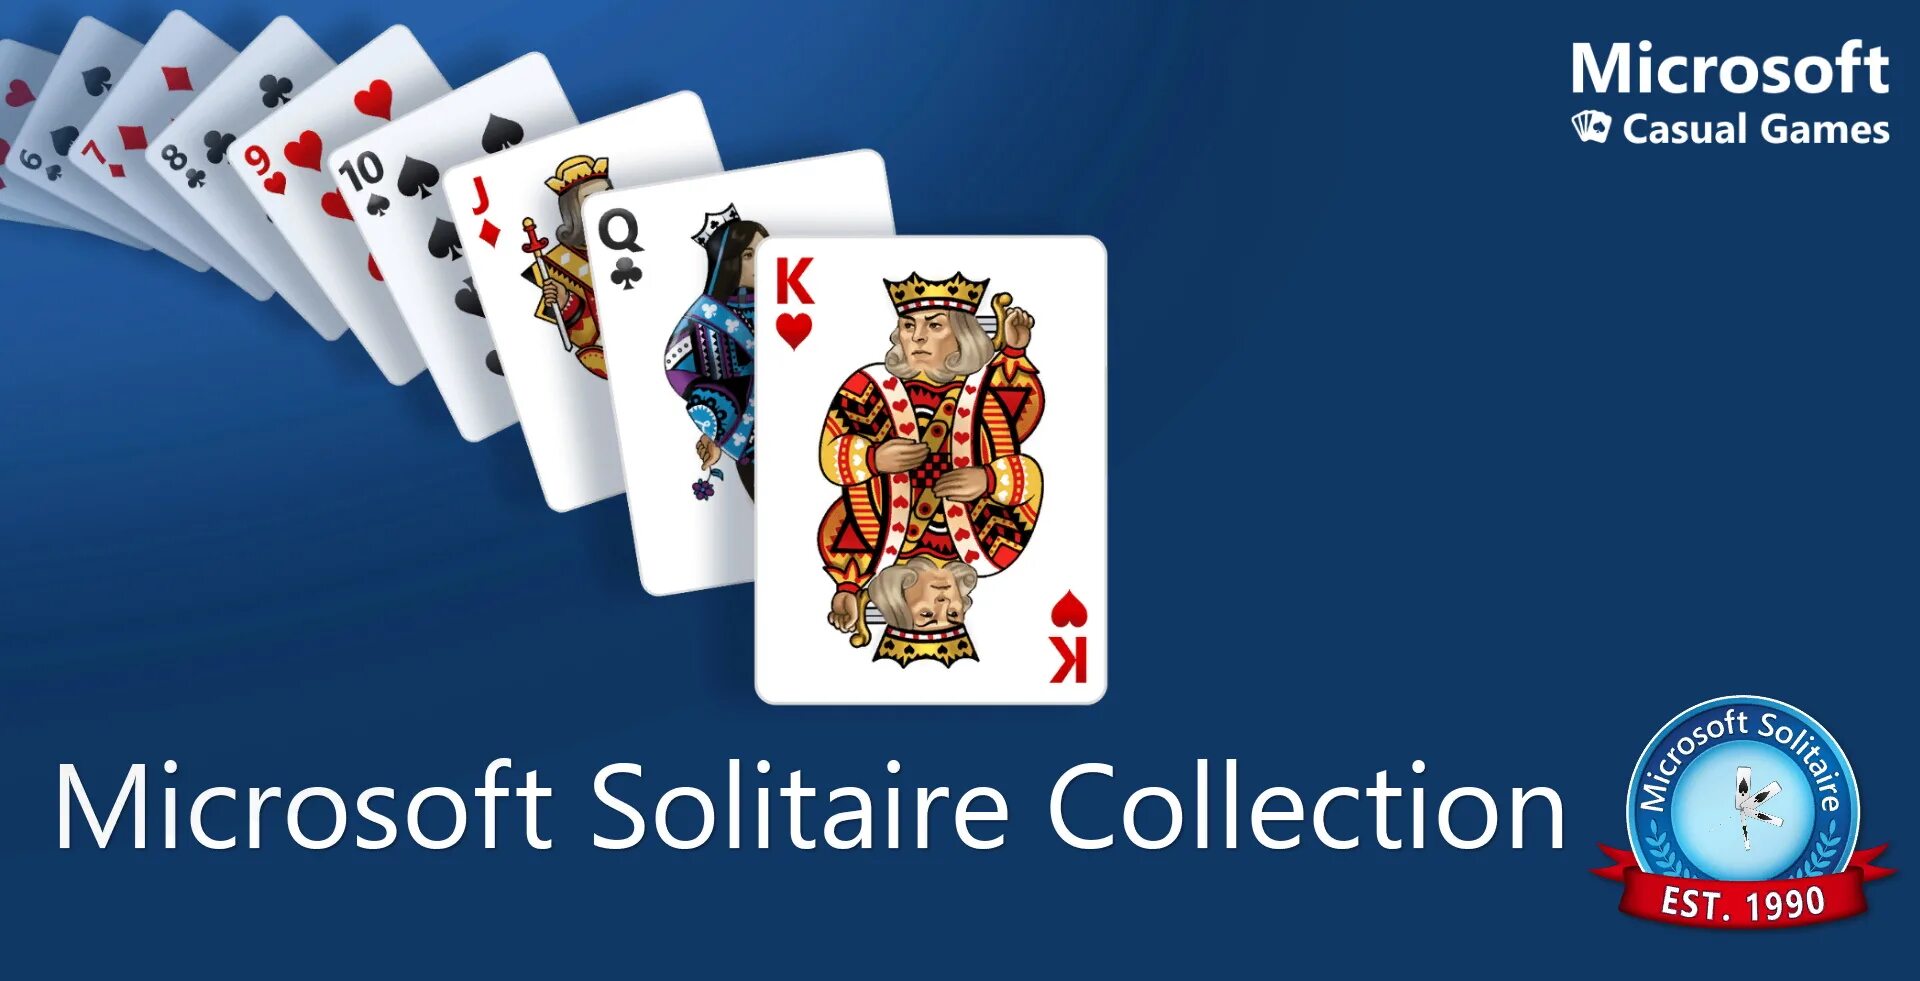 Игра Solitaire collection. Стандартные карточные игры для Windows. Microsoft Solitaire косынка. Майкрософт Солитер коллекшн.